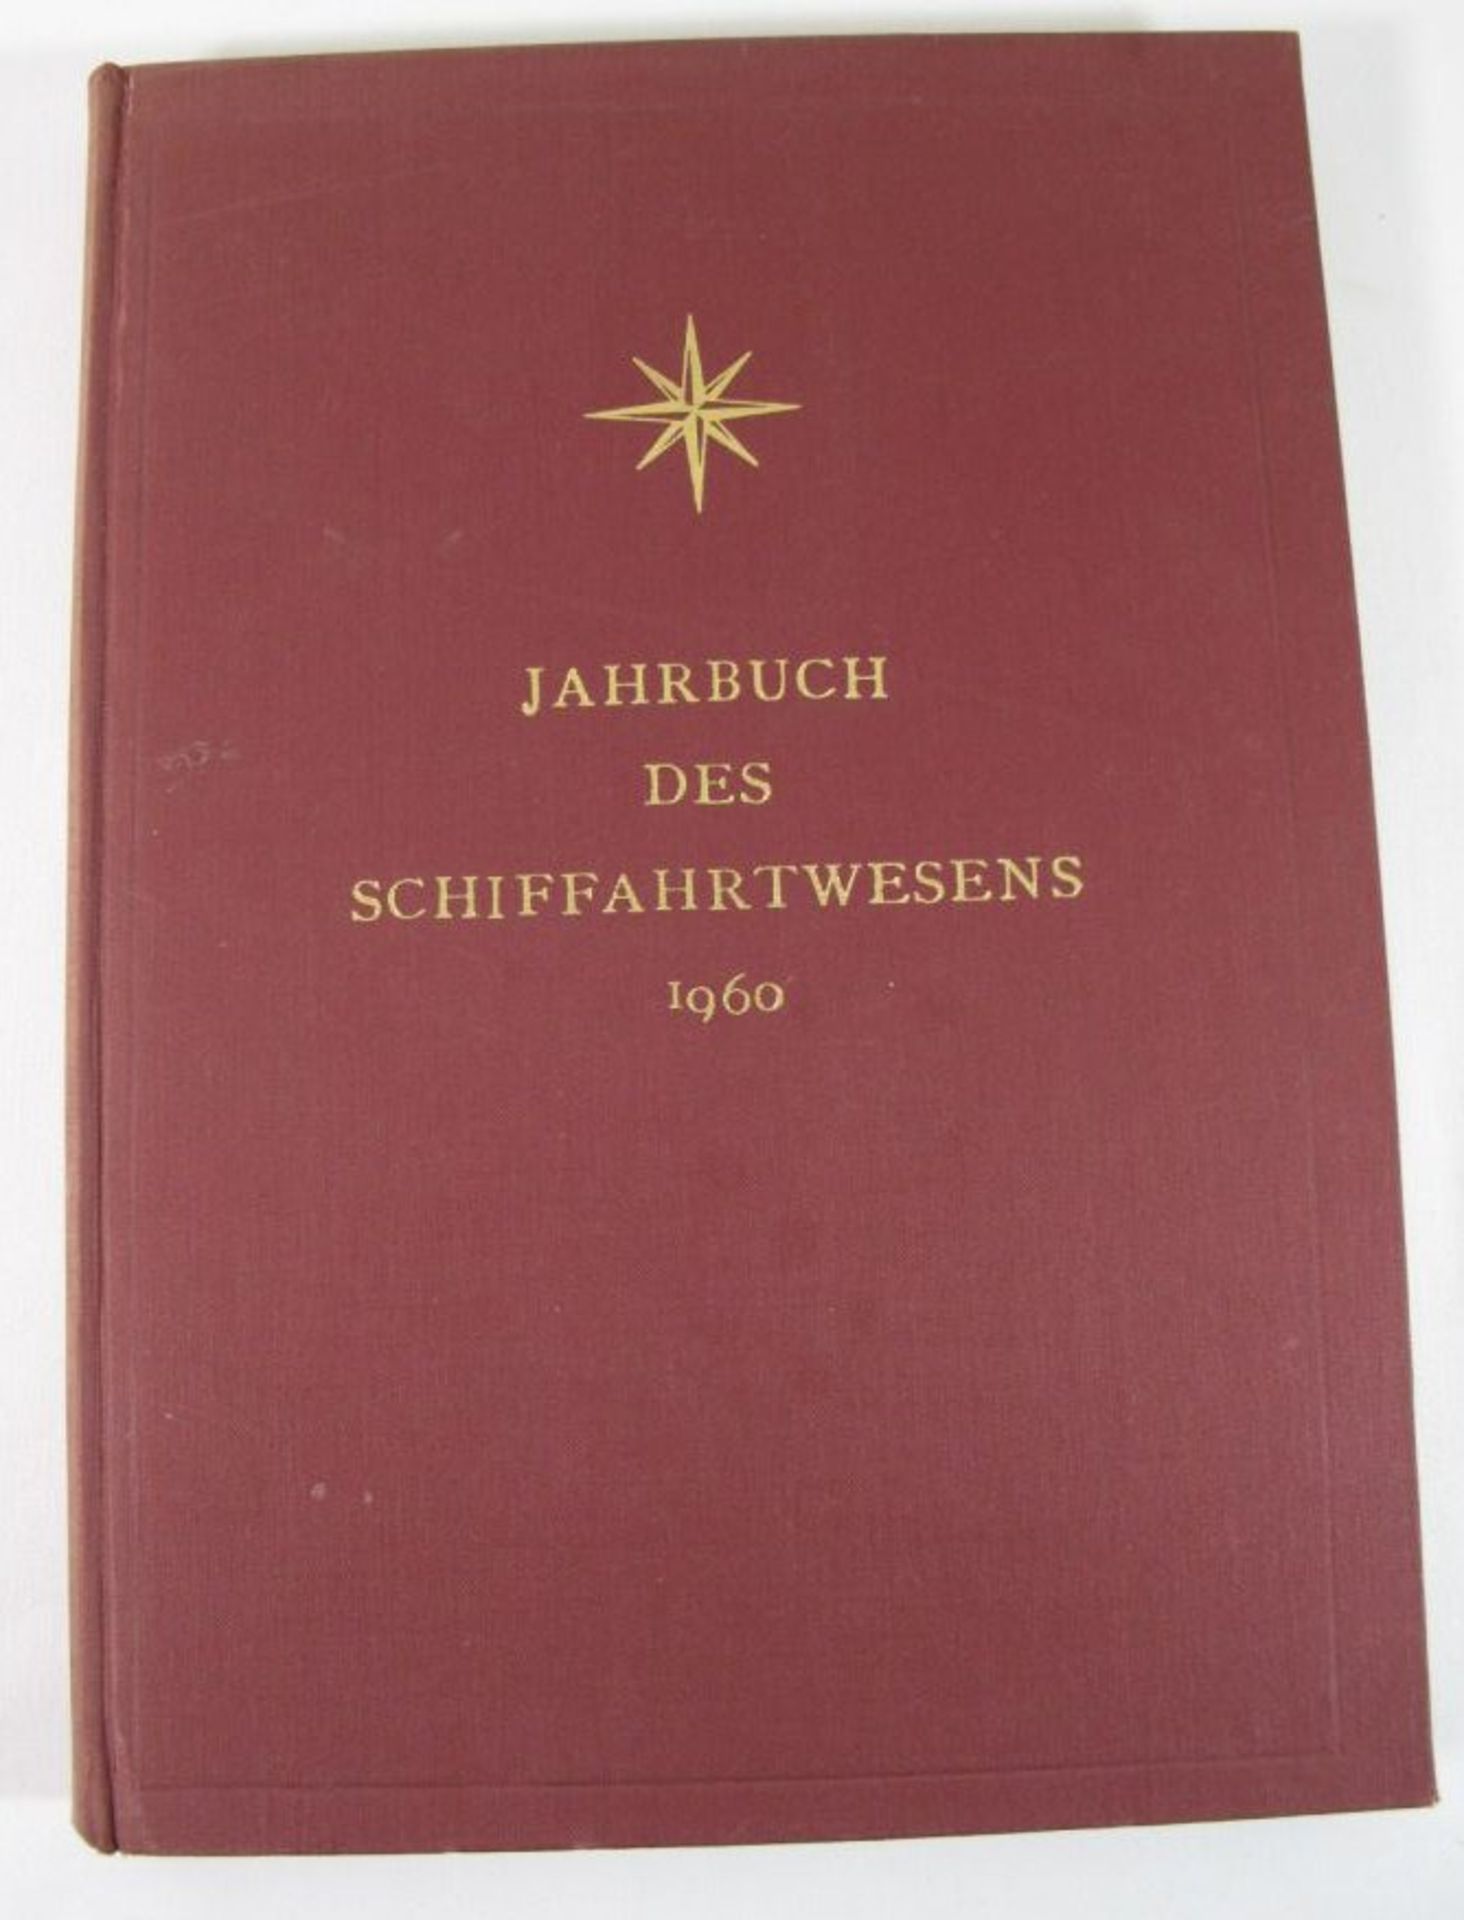 Jahrbuch des Schiffahrtwesens 1960